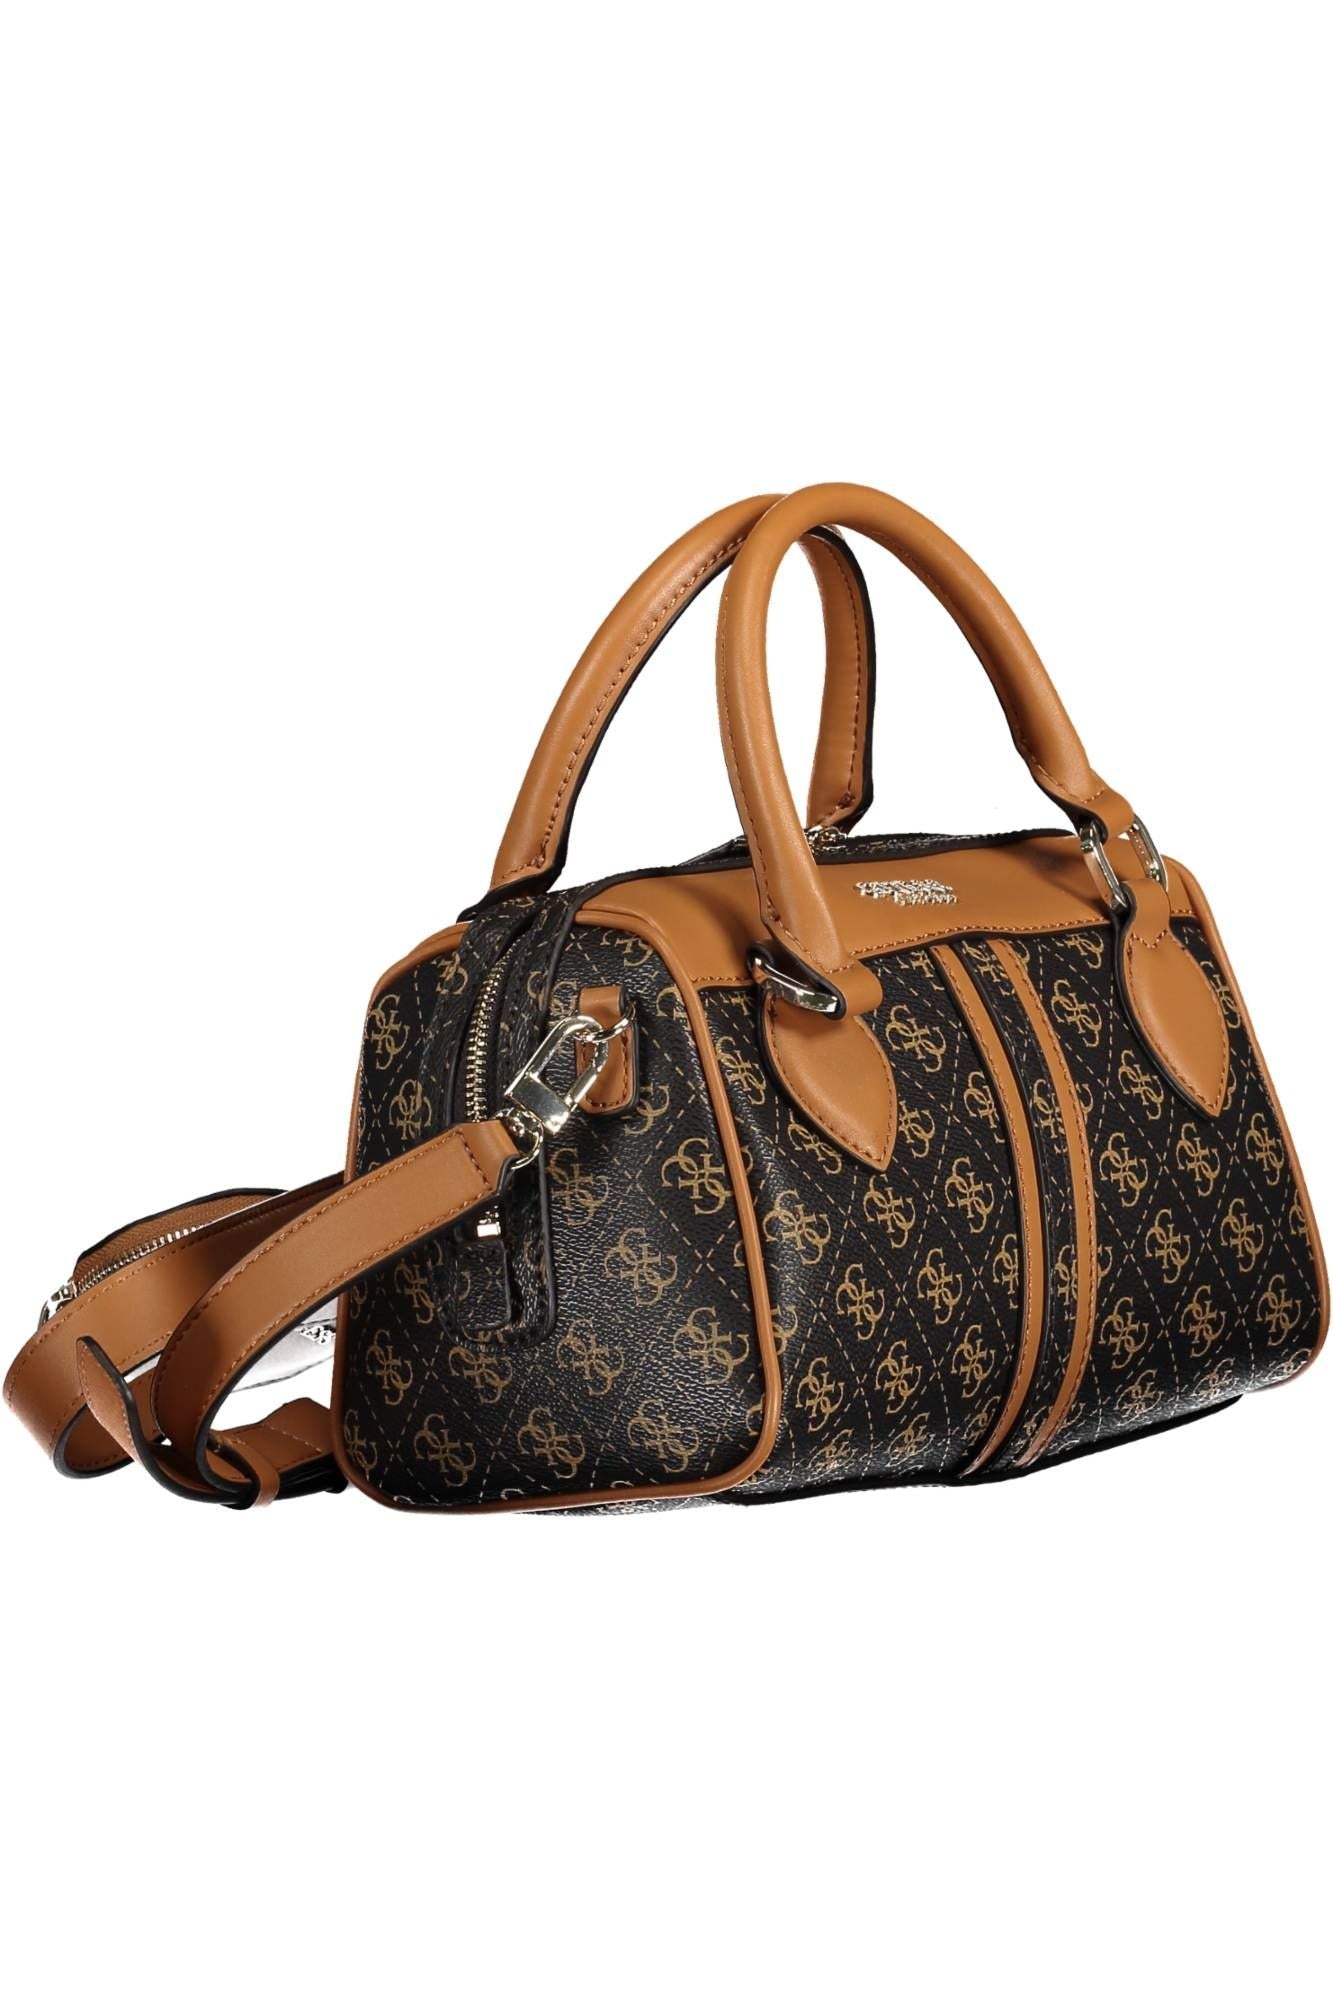 Elegant Brown Handbag with Contrasting Details